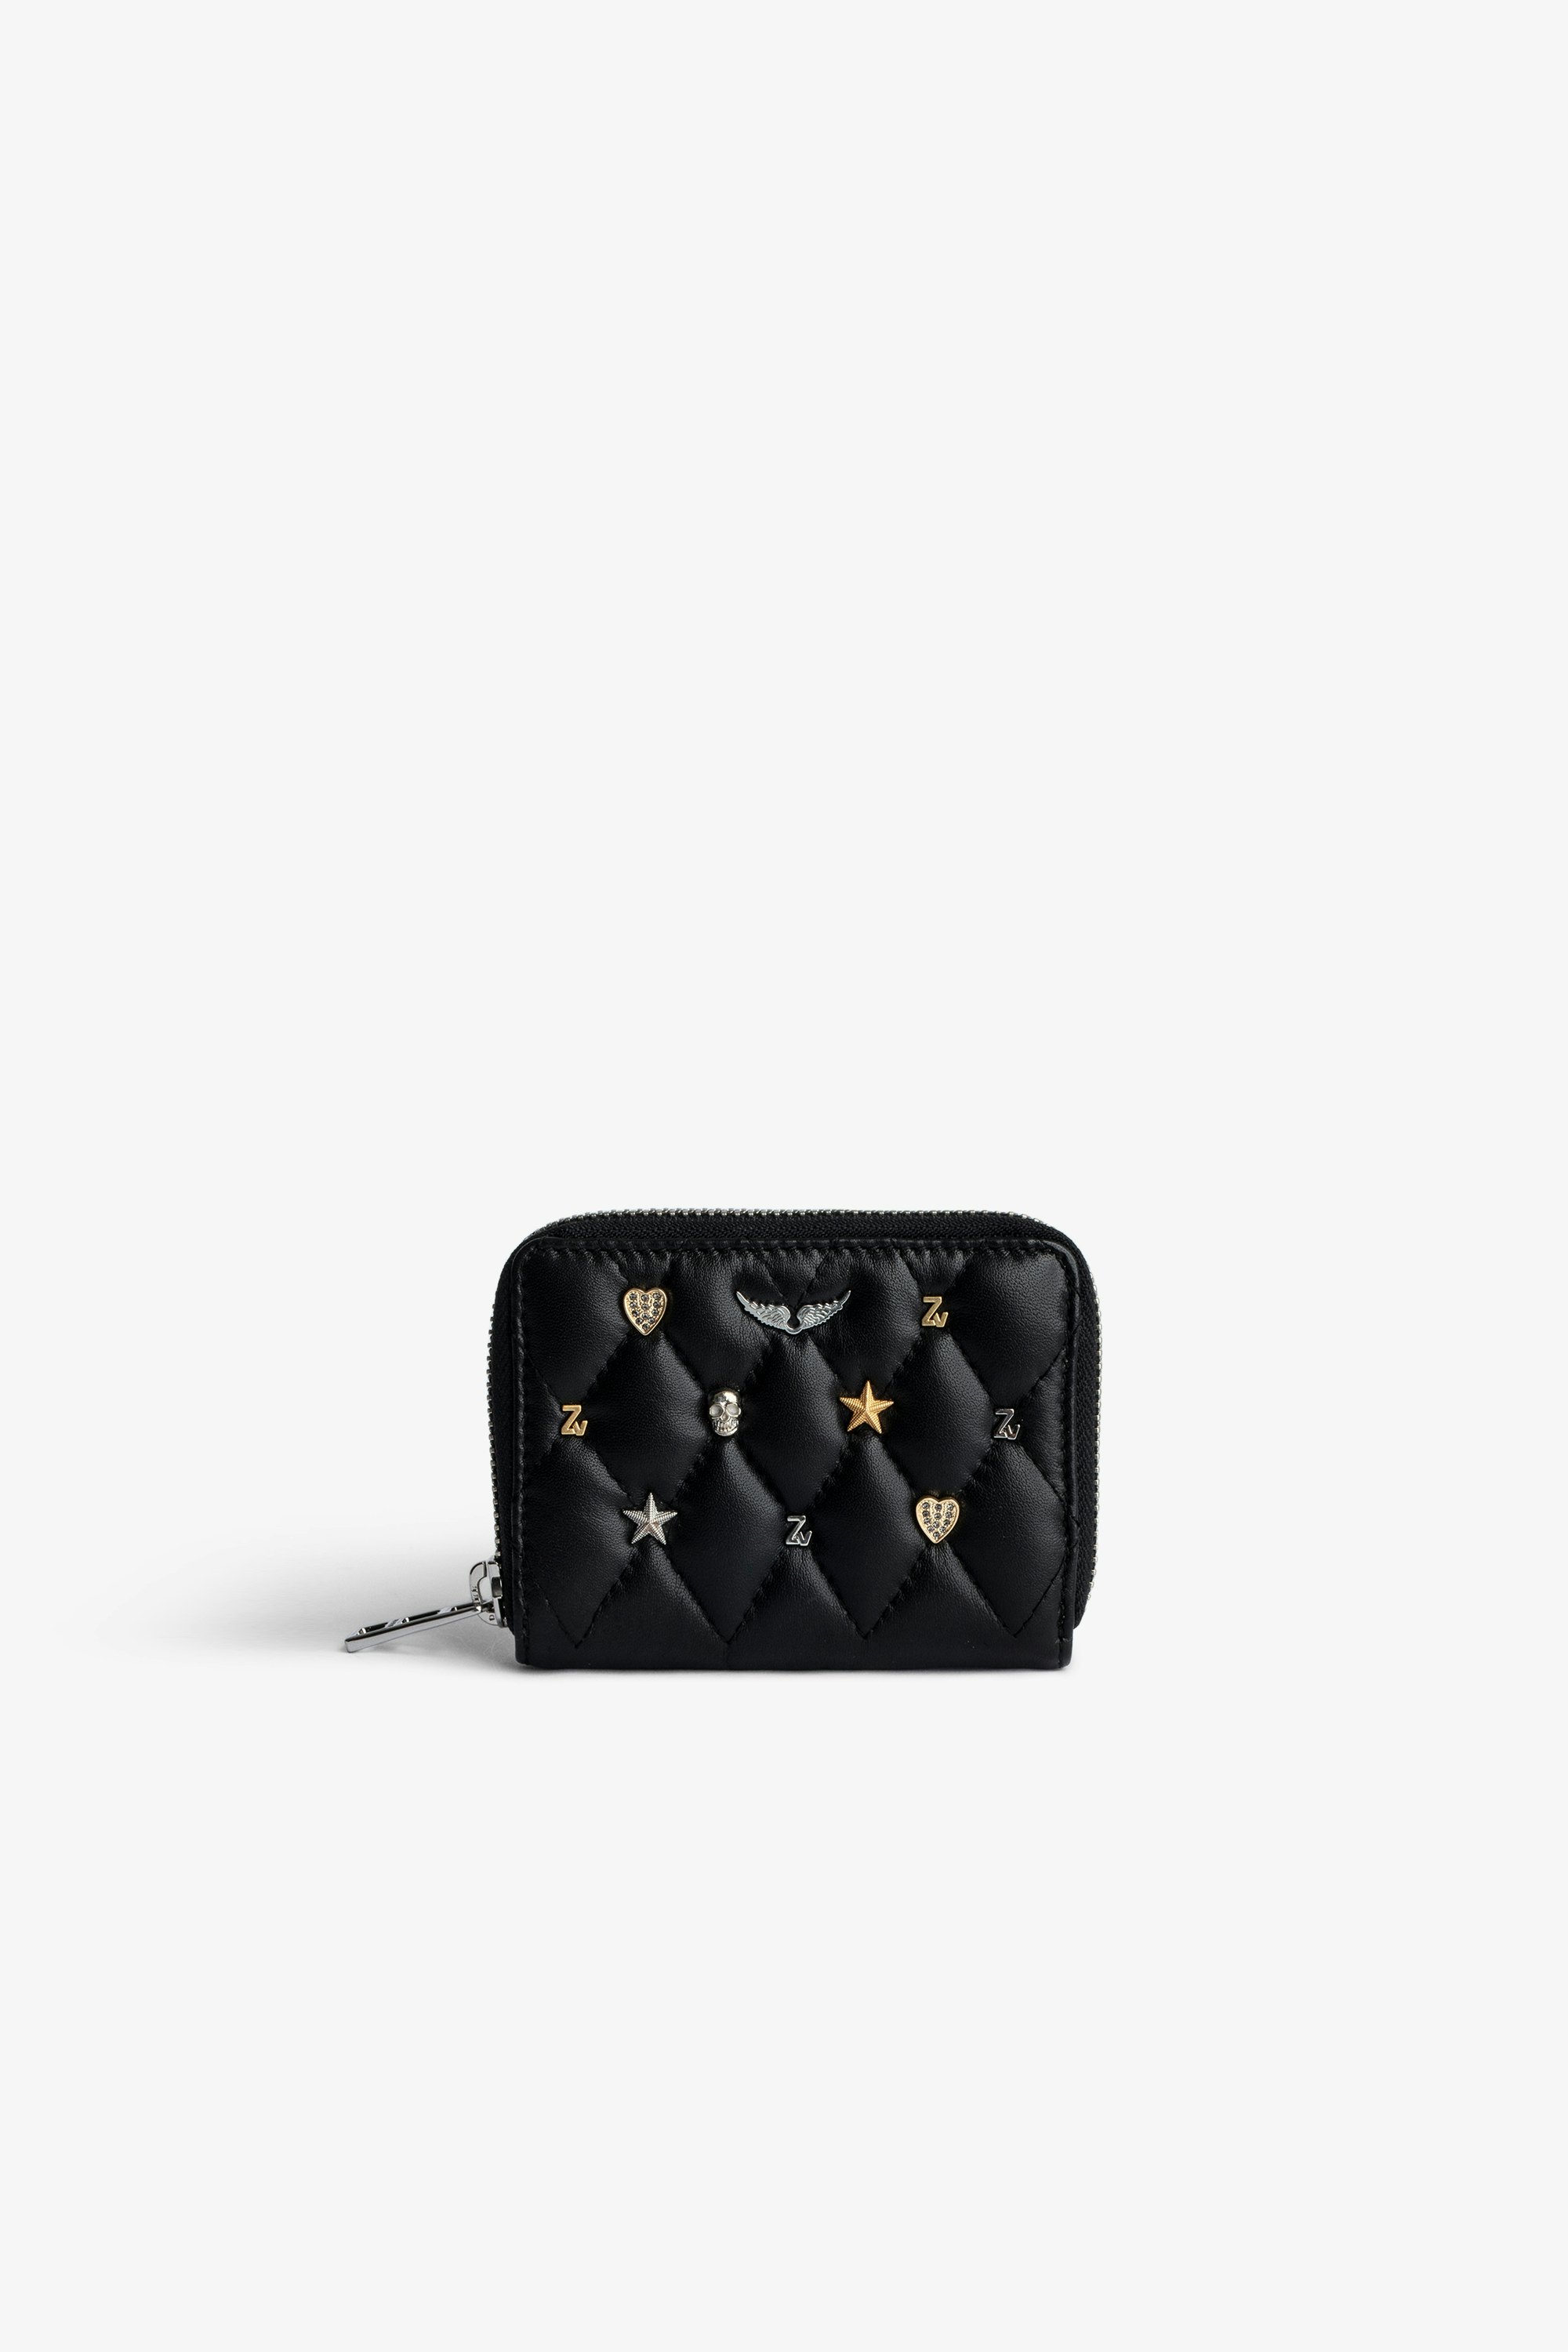 Portamonete Mini ZV Portamonete con zip in pelle nera trapuntata con charm argento e oro donna.